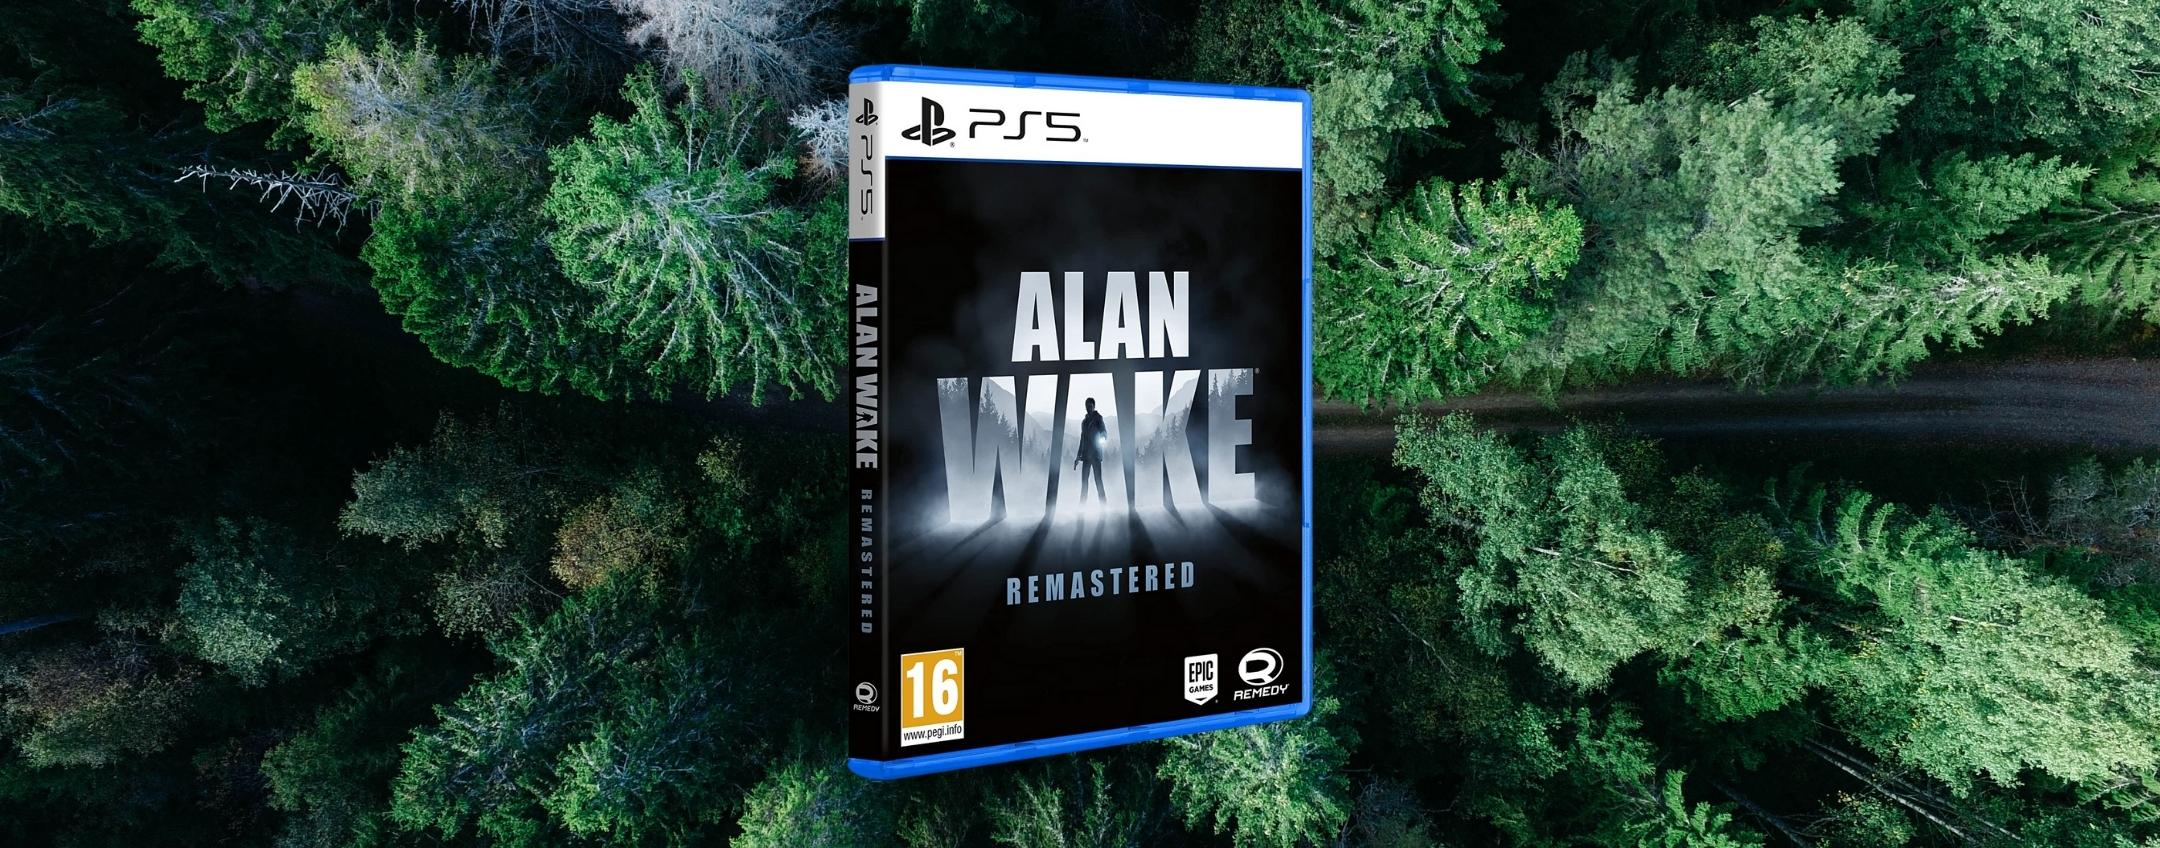 Alan Wake Remastered, affare o ERRORE DI PREZZO? 14€ per PS5